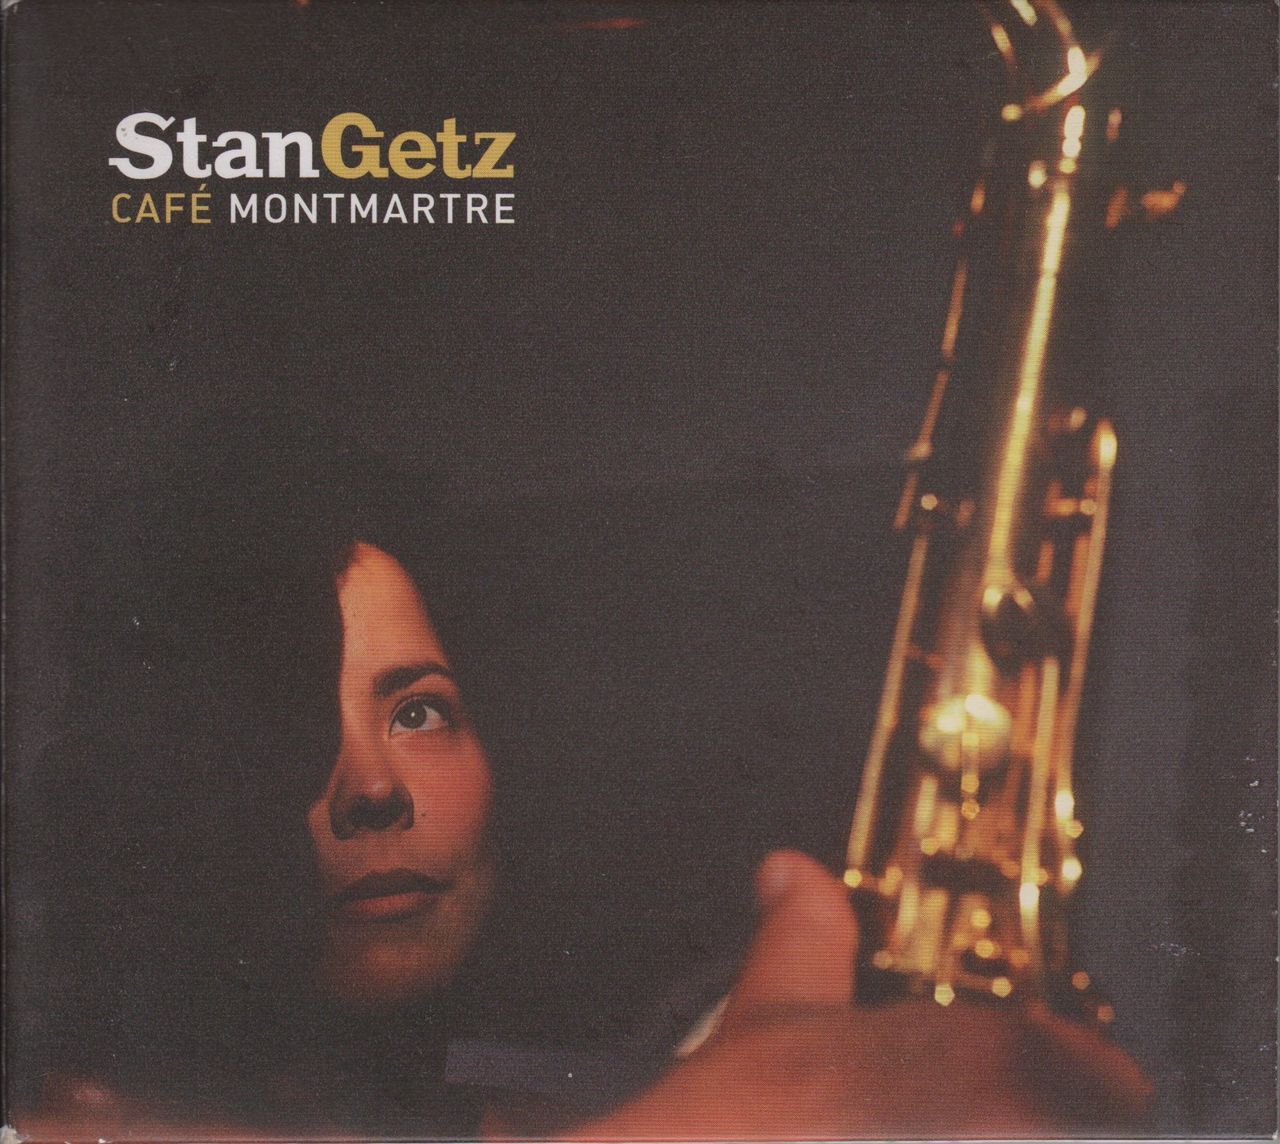 Café Montmartre album art